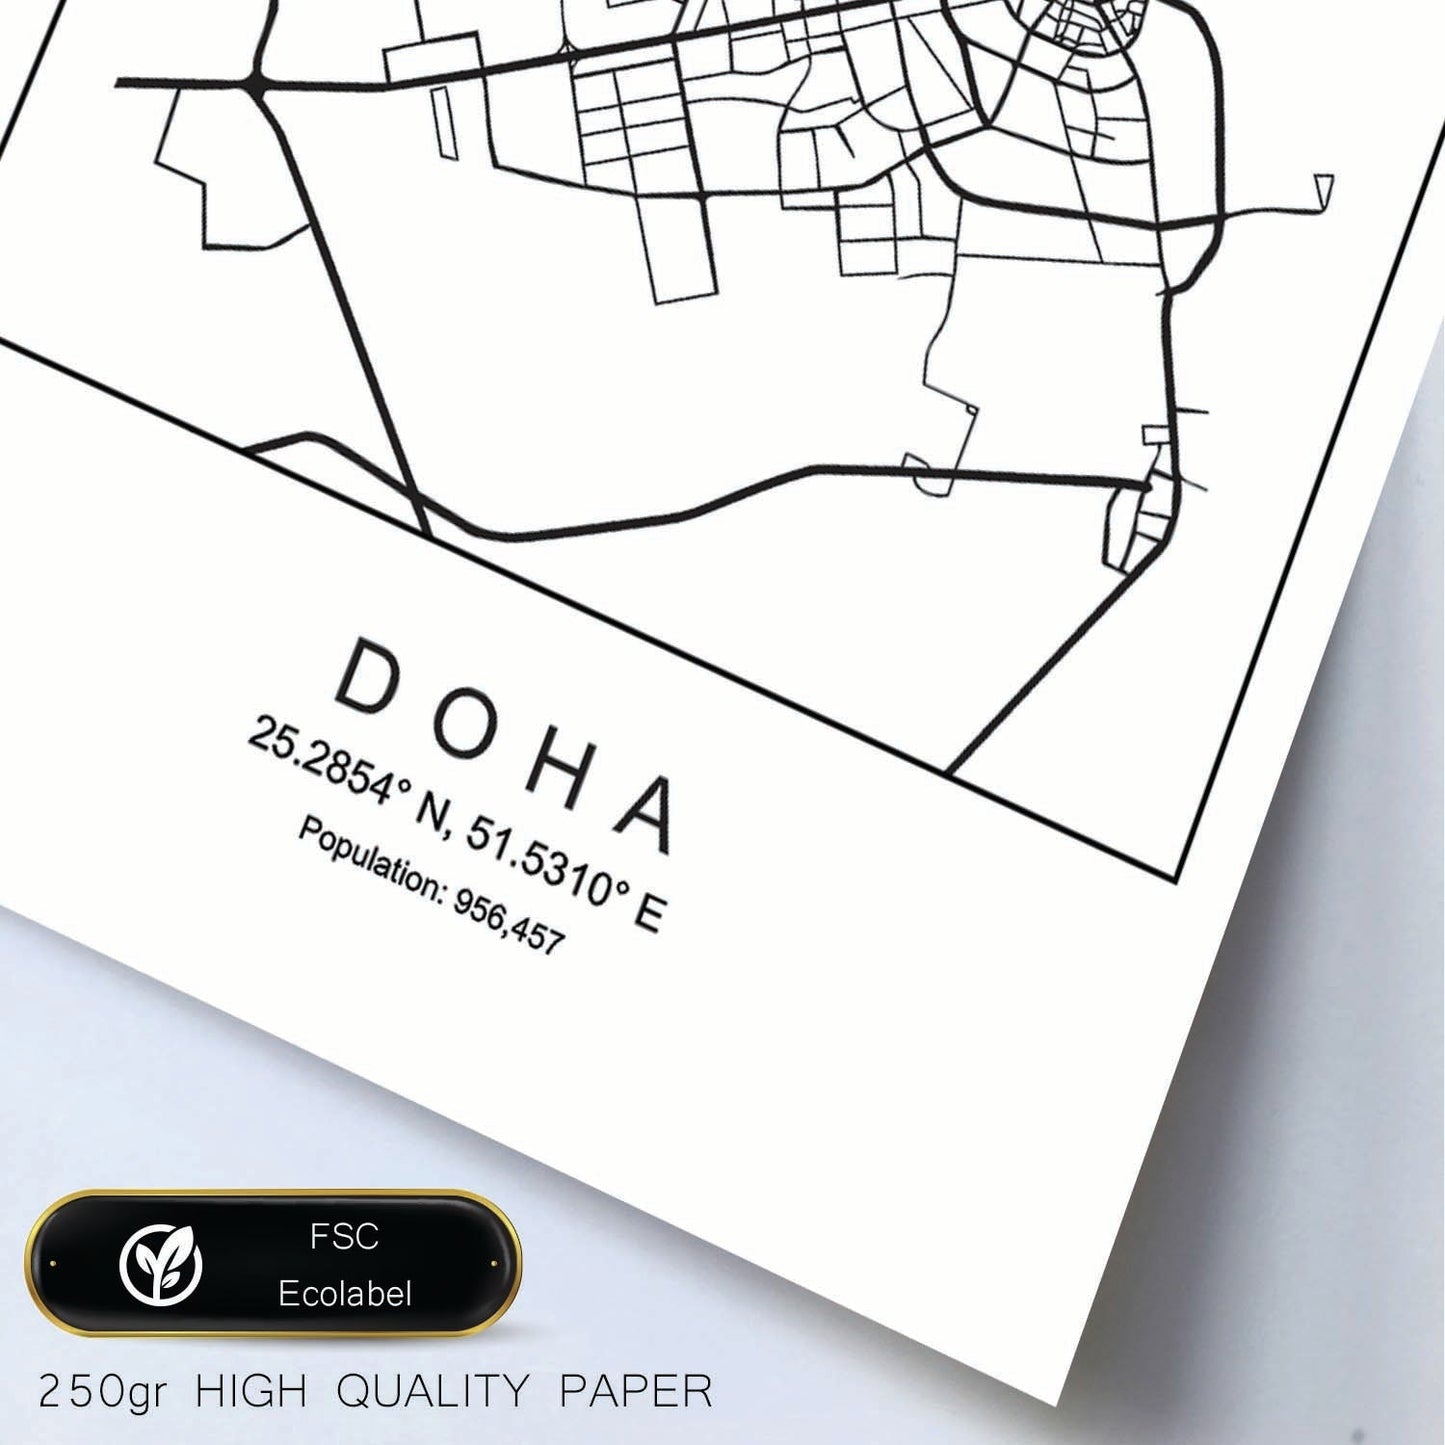 Lámina mapa de la ciudad Doha estilo nordico en blanco y negro.-Artwork-Nacnic-Nacnic Estudio SL